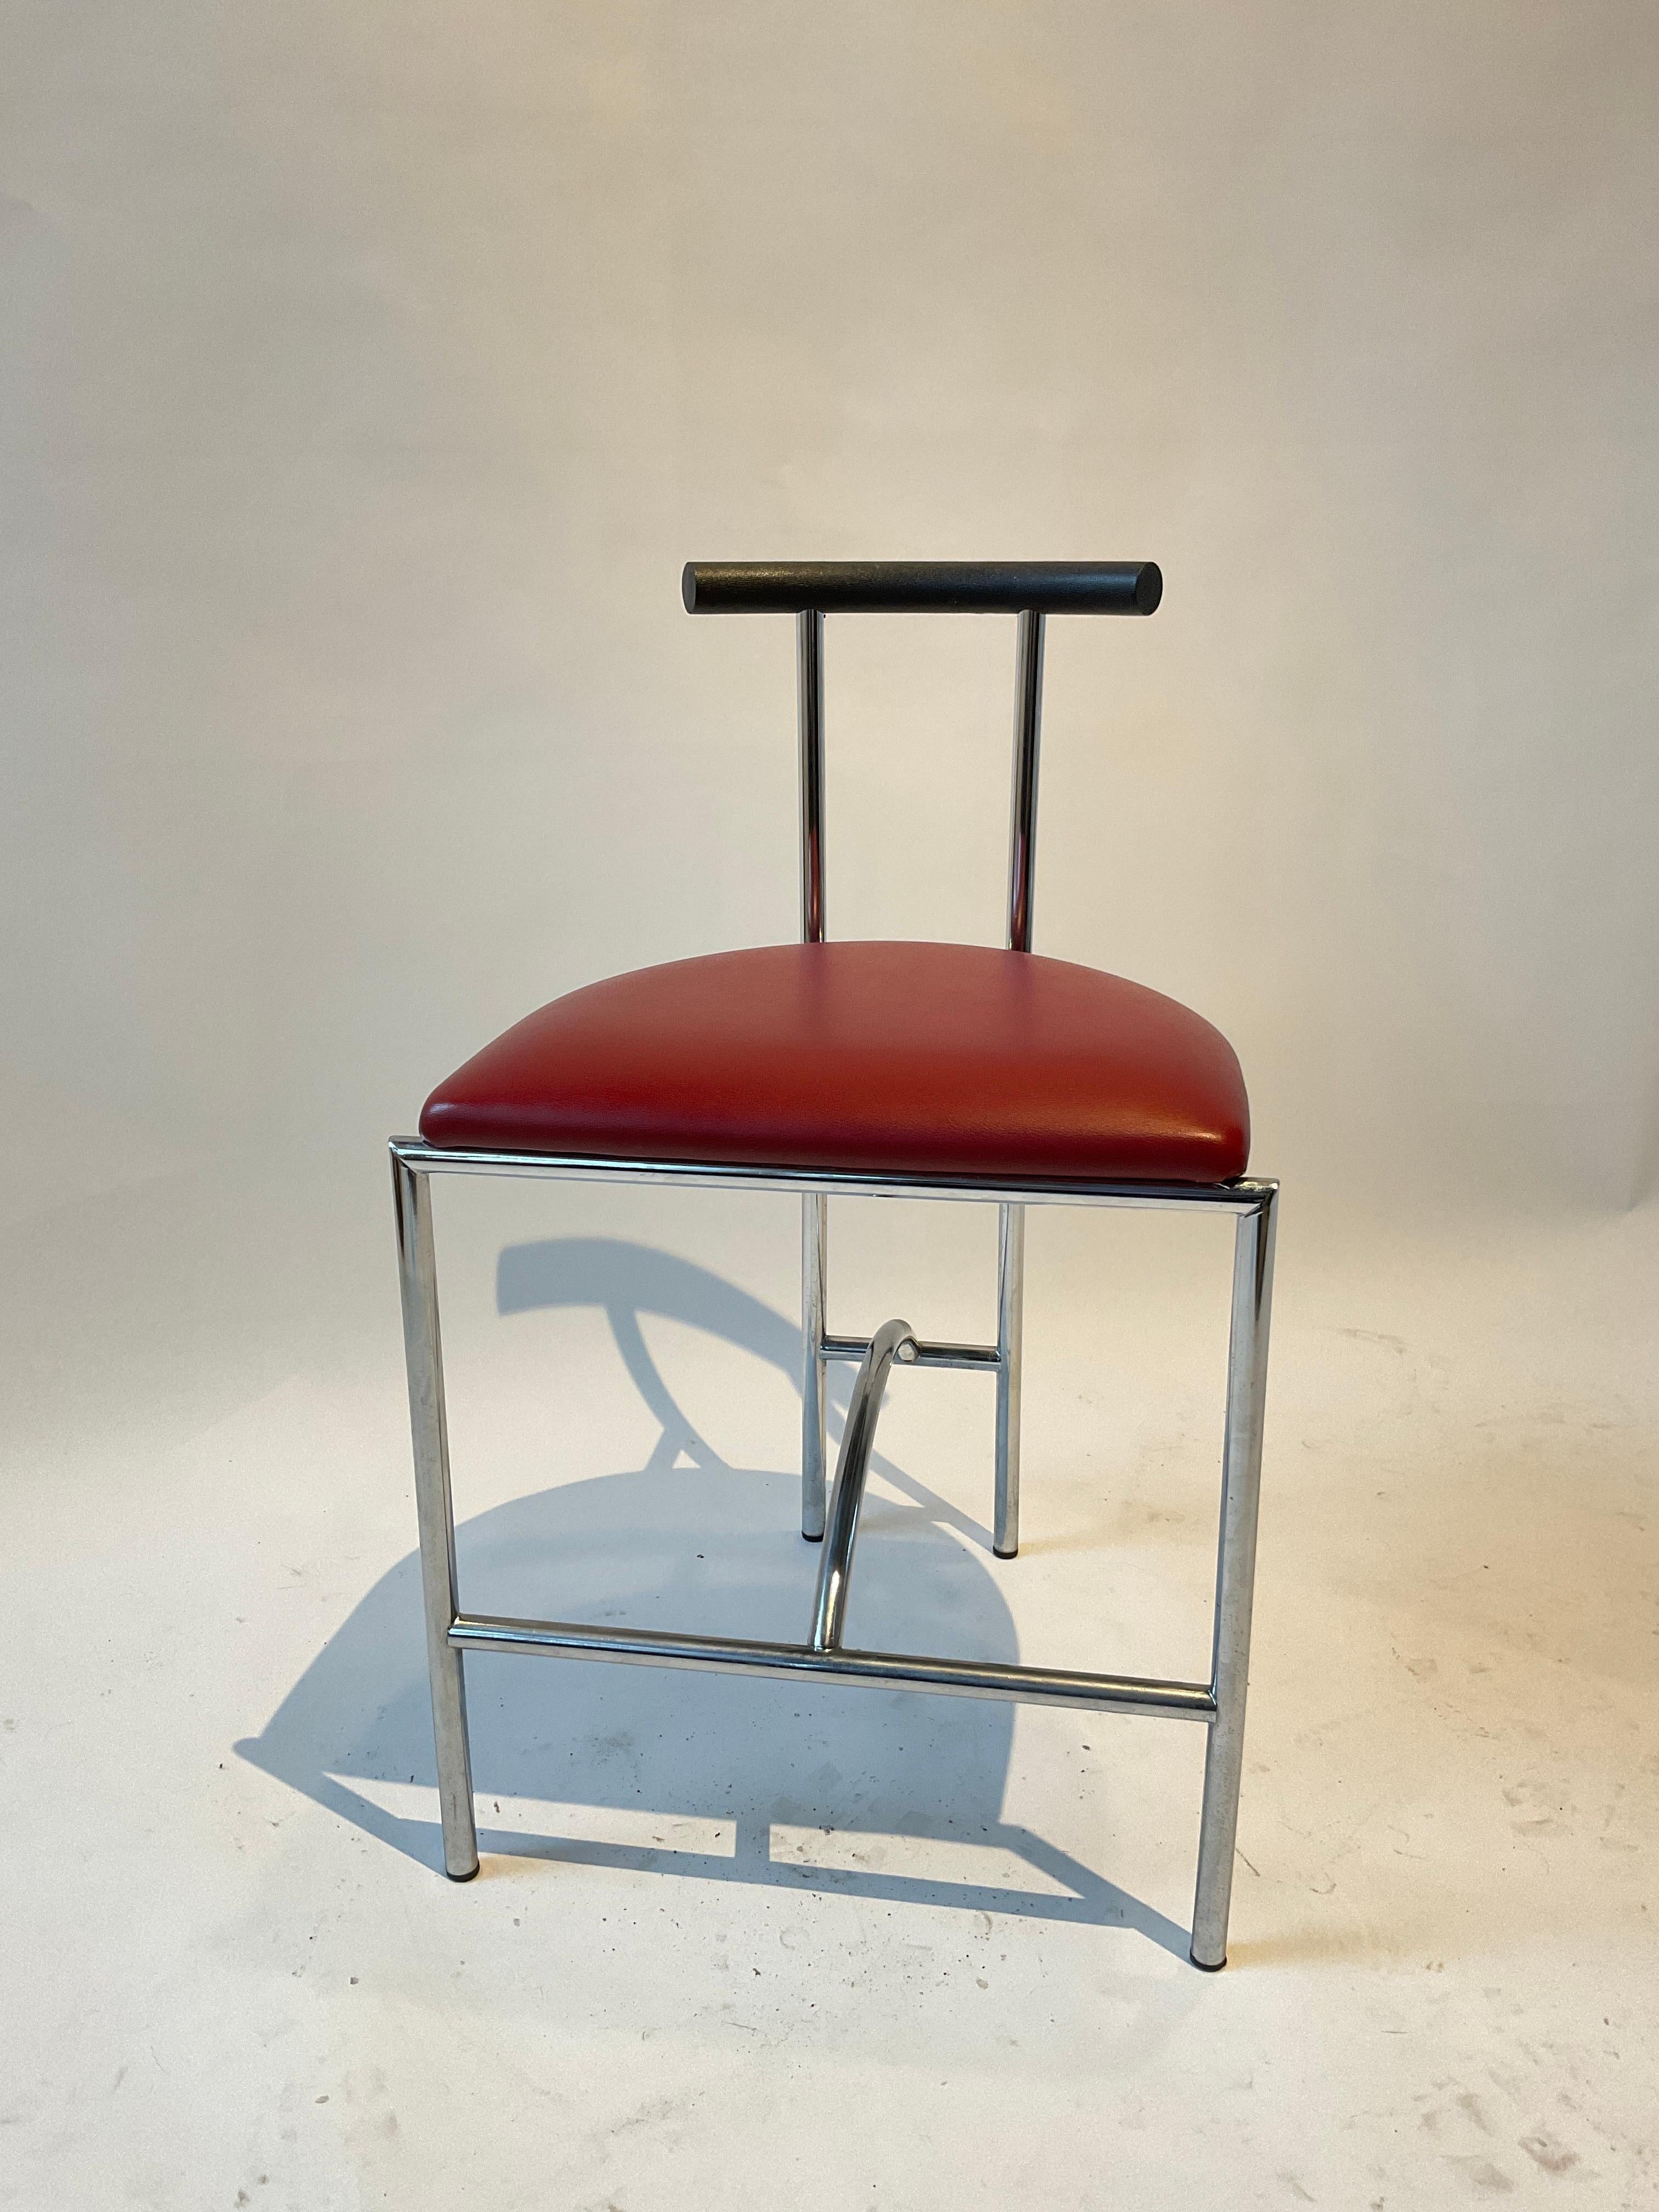 1980s Chrome Tokyo chair by Rodney Kinsman for Bieffeplast/ Italy.